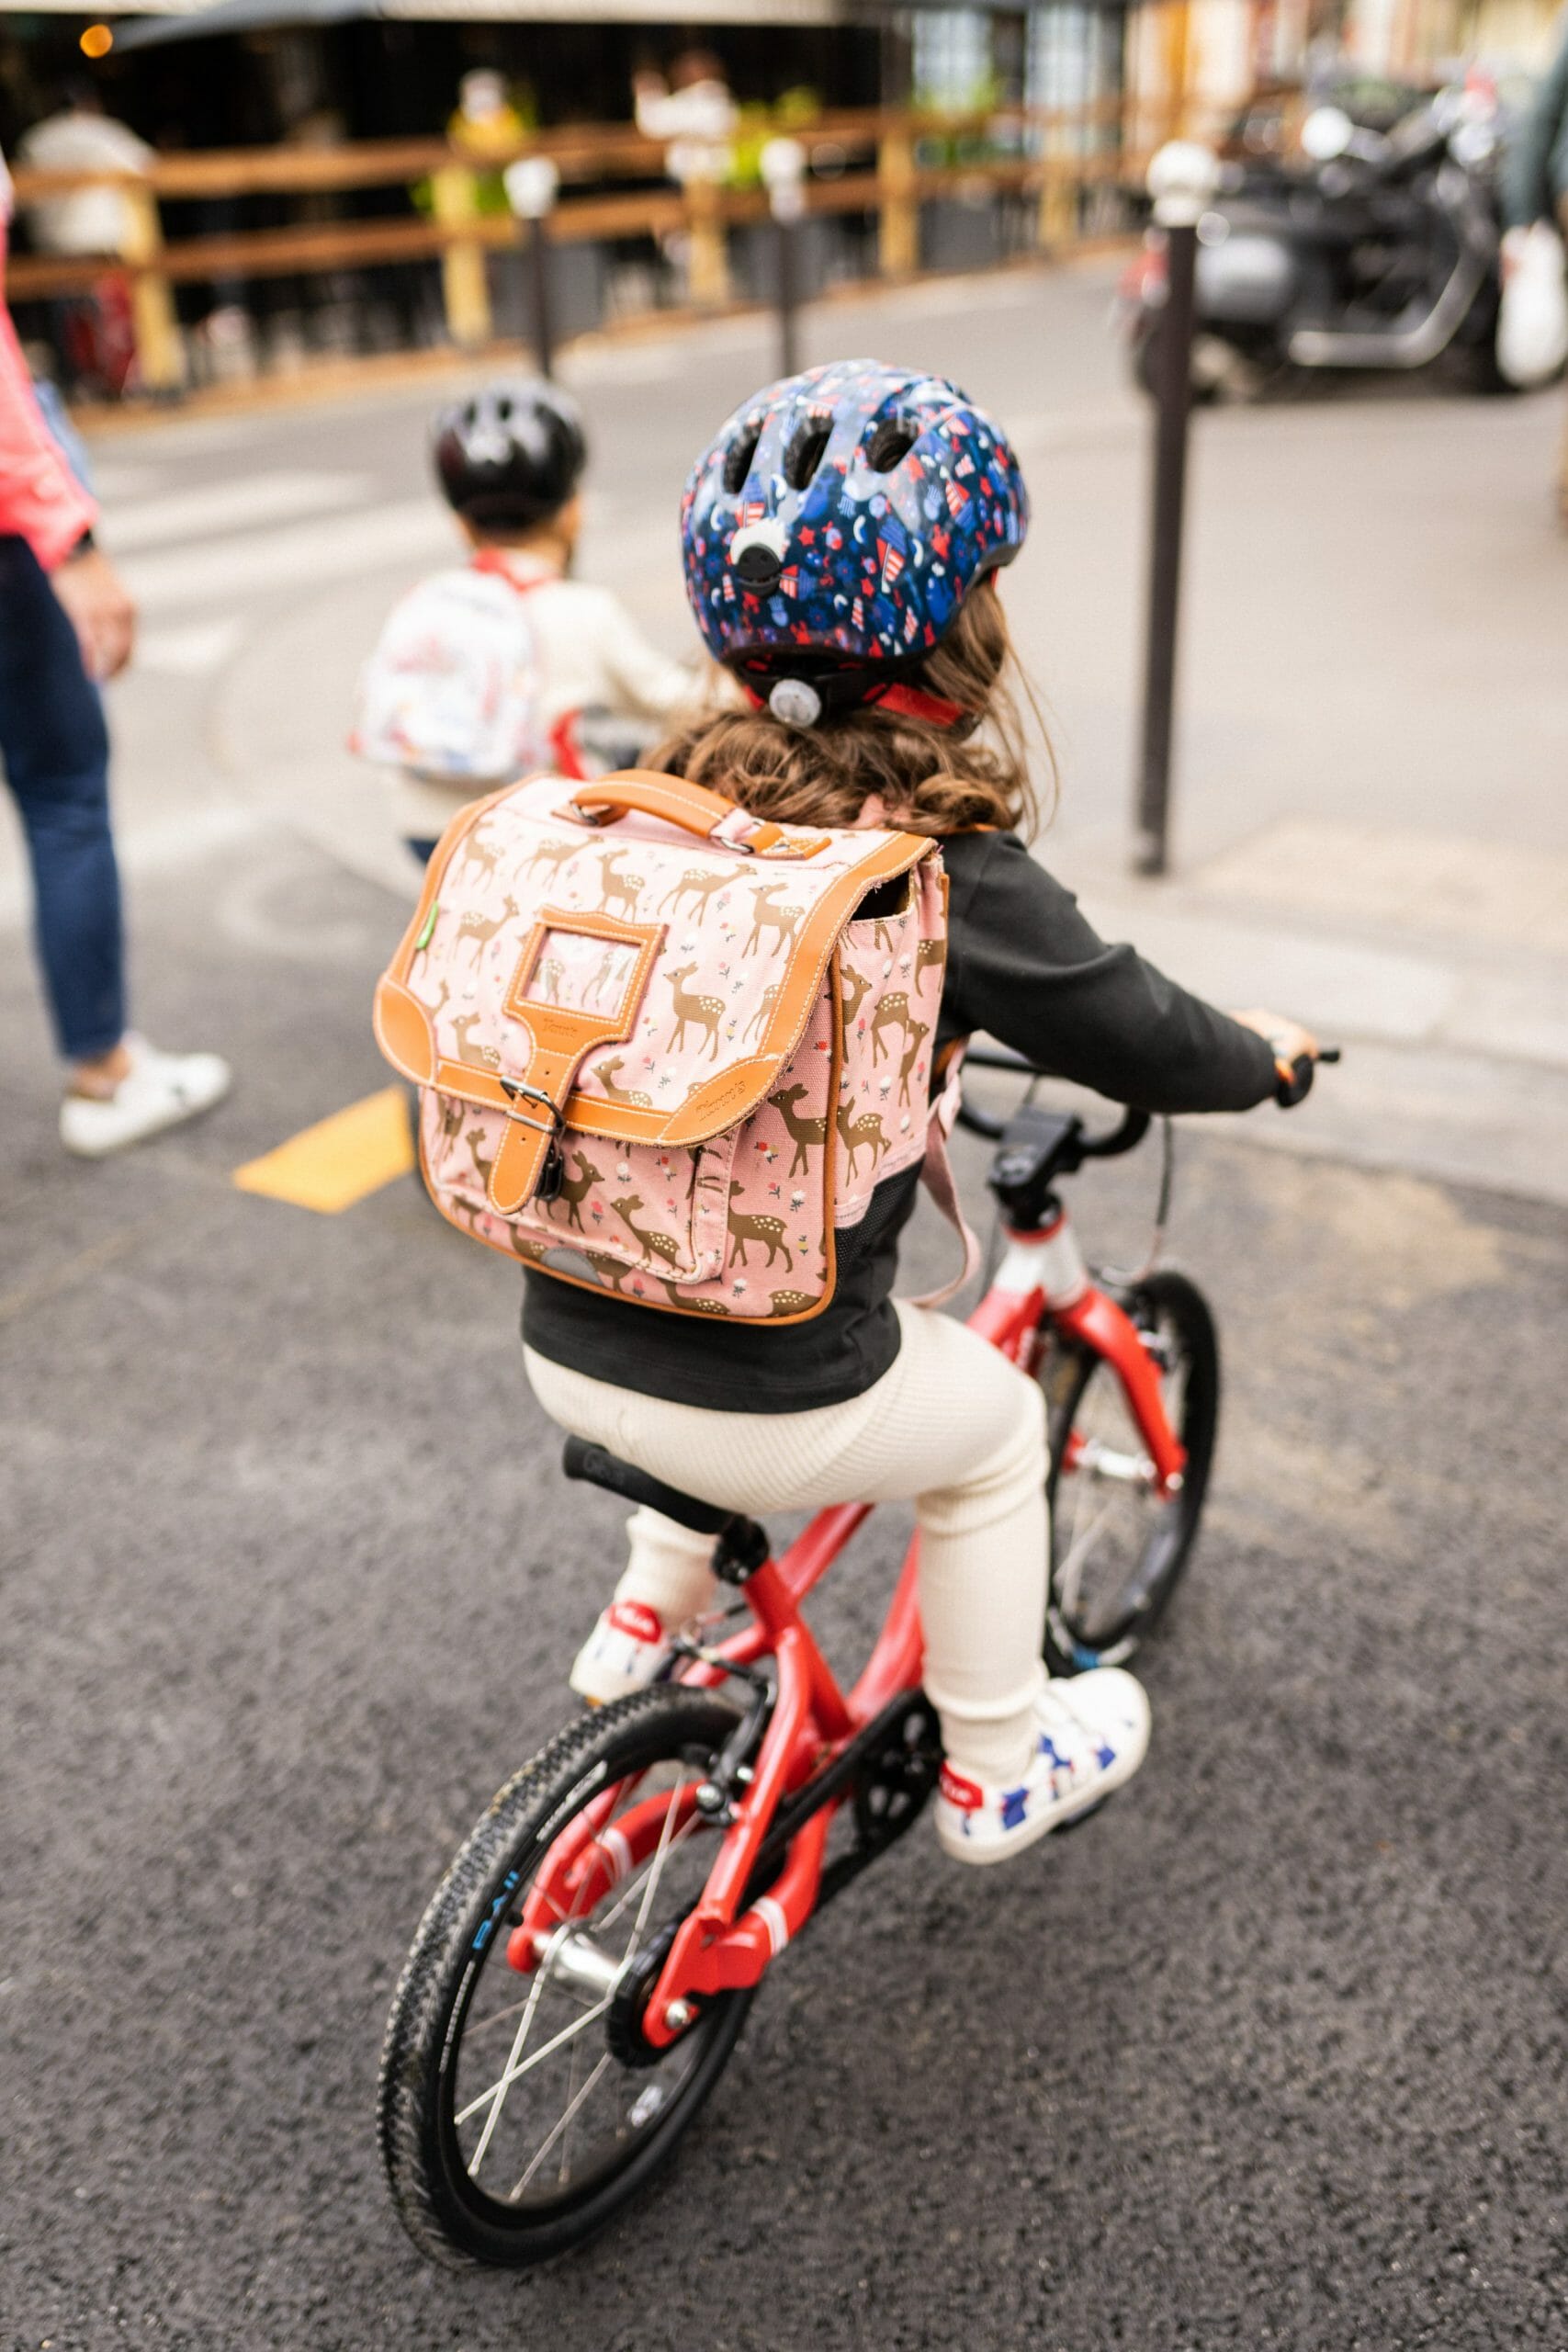 Les petites roues de vélo enfant : fausse bonne idée ? – Gibus Cycles